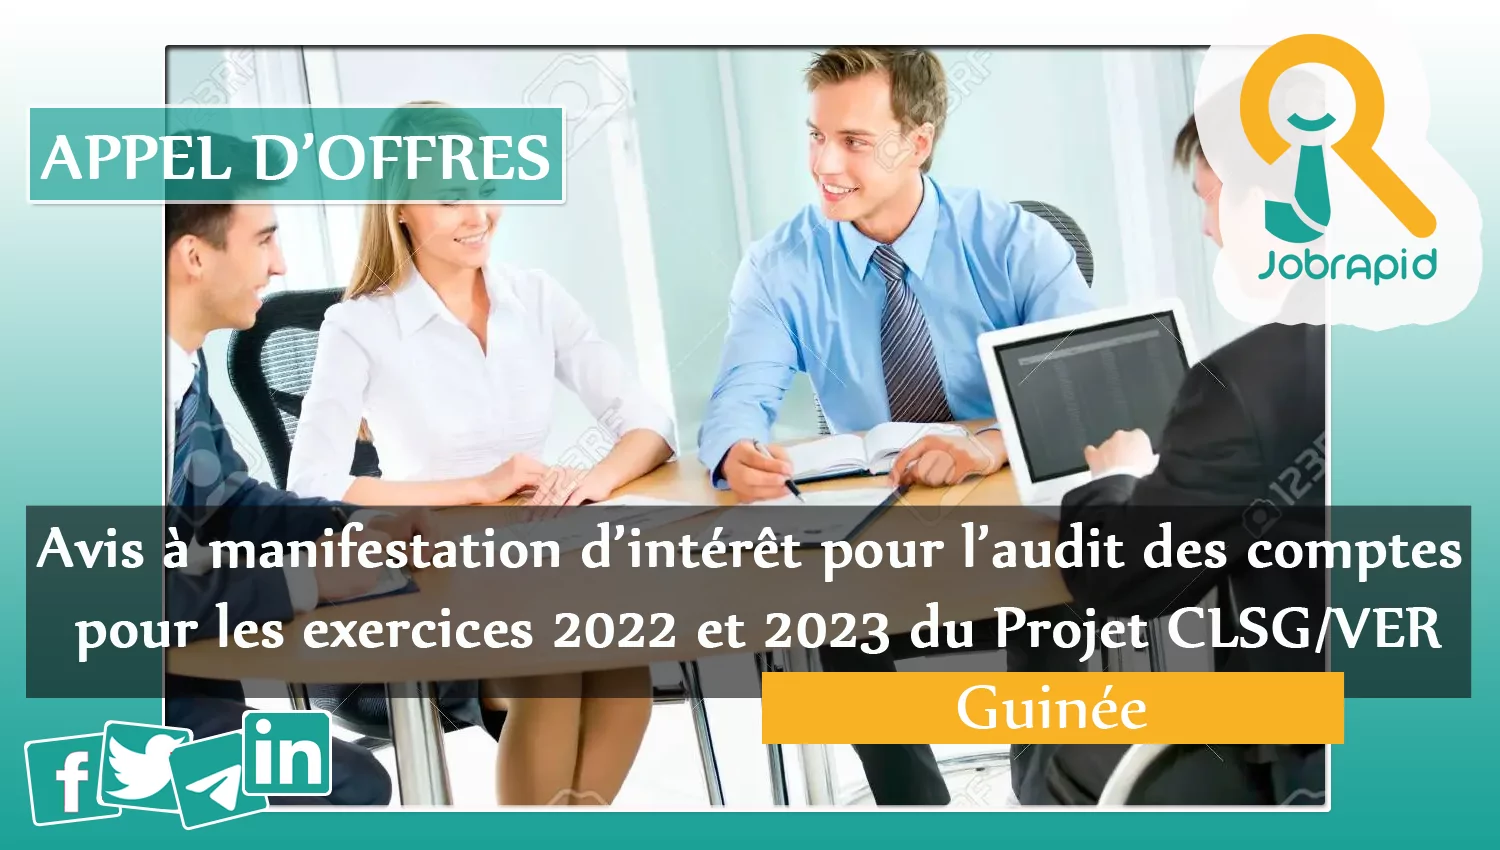 Avis à manifestation d’intérêt pour l’audit des comptes pour les exercices 2022 et 2023 du Projet CLSG/VER, Guinée